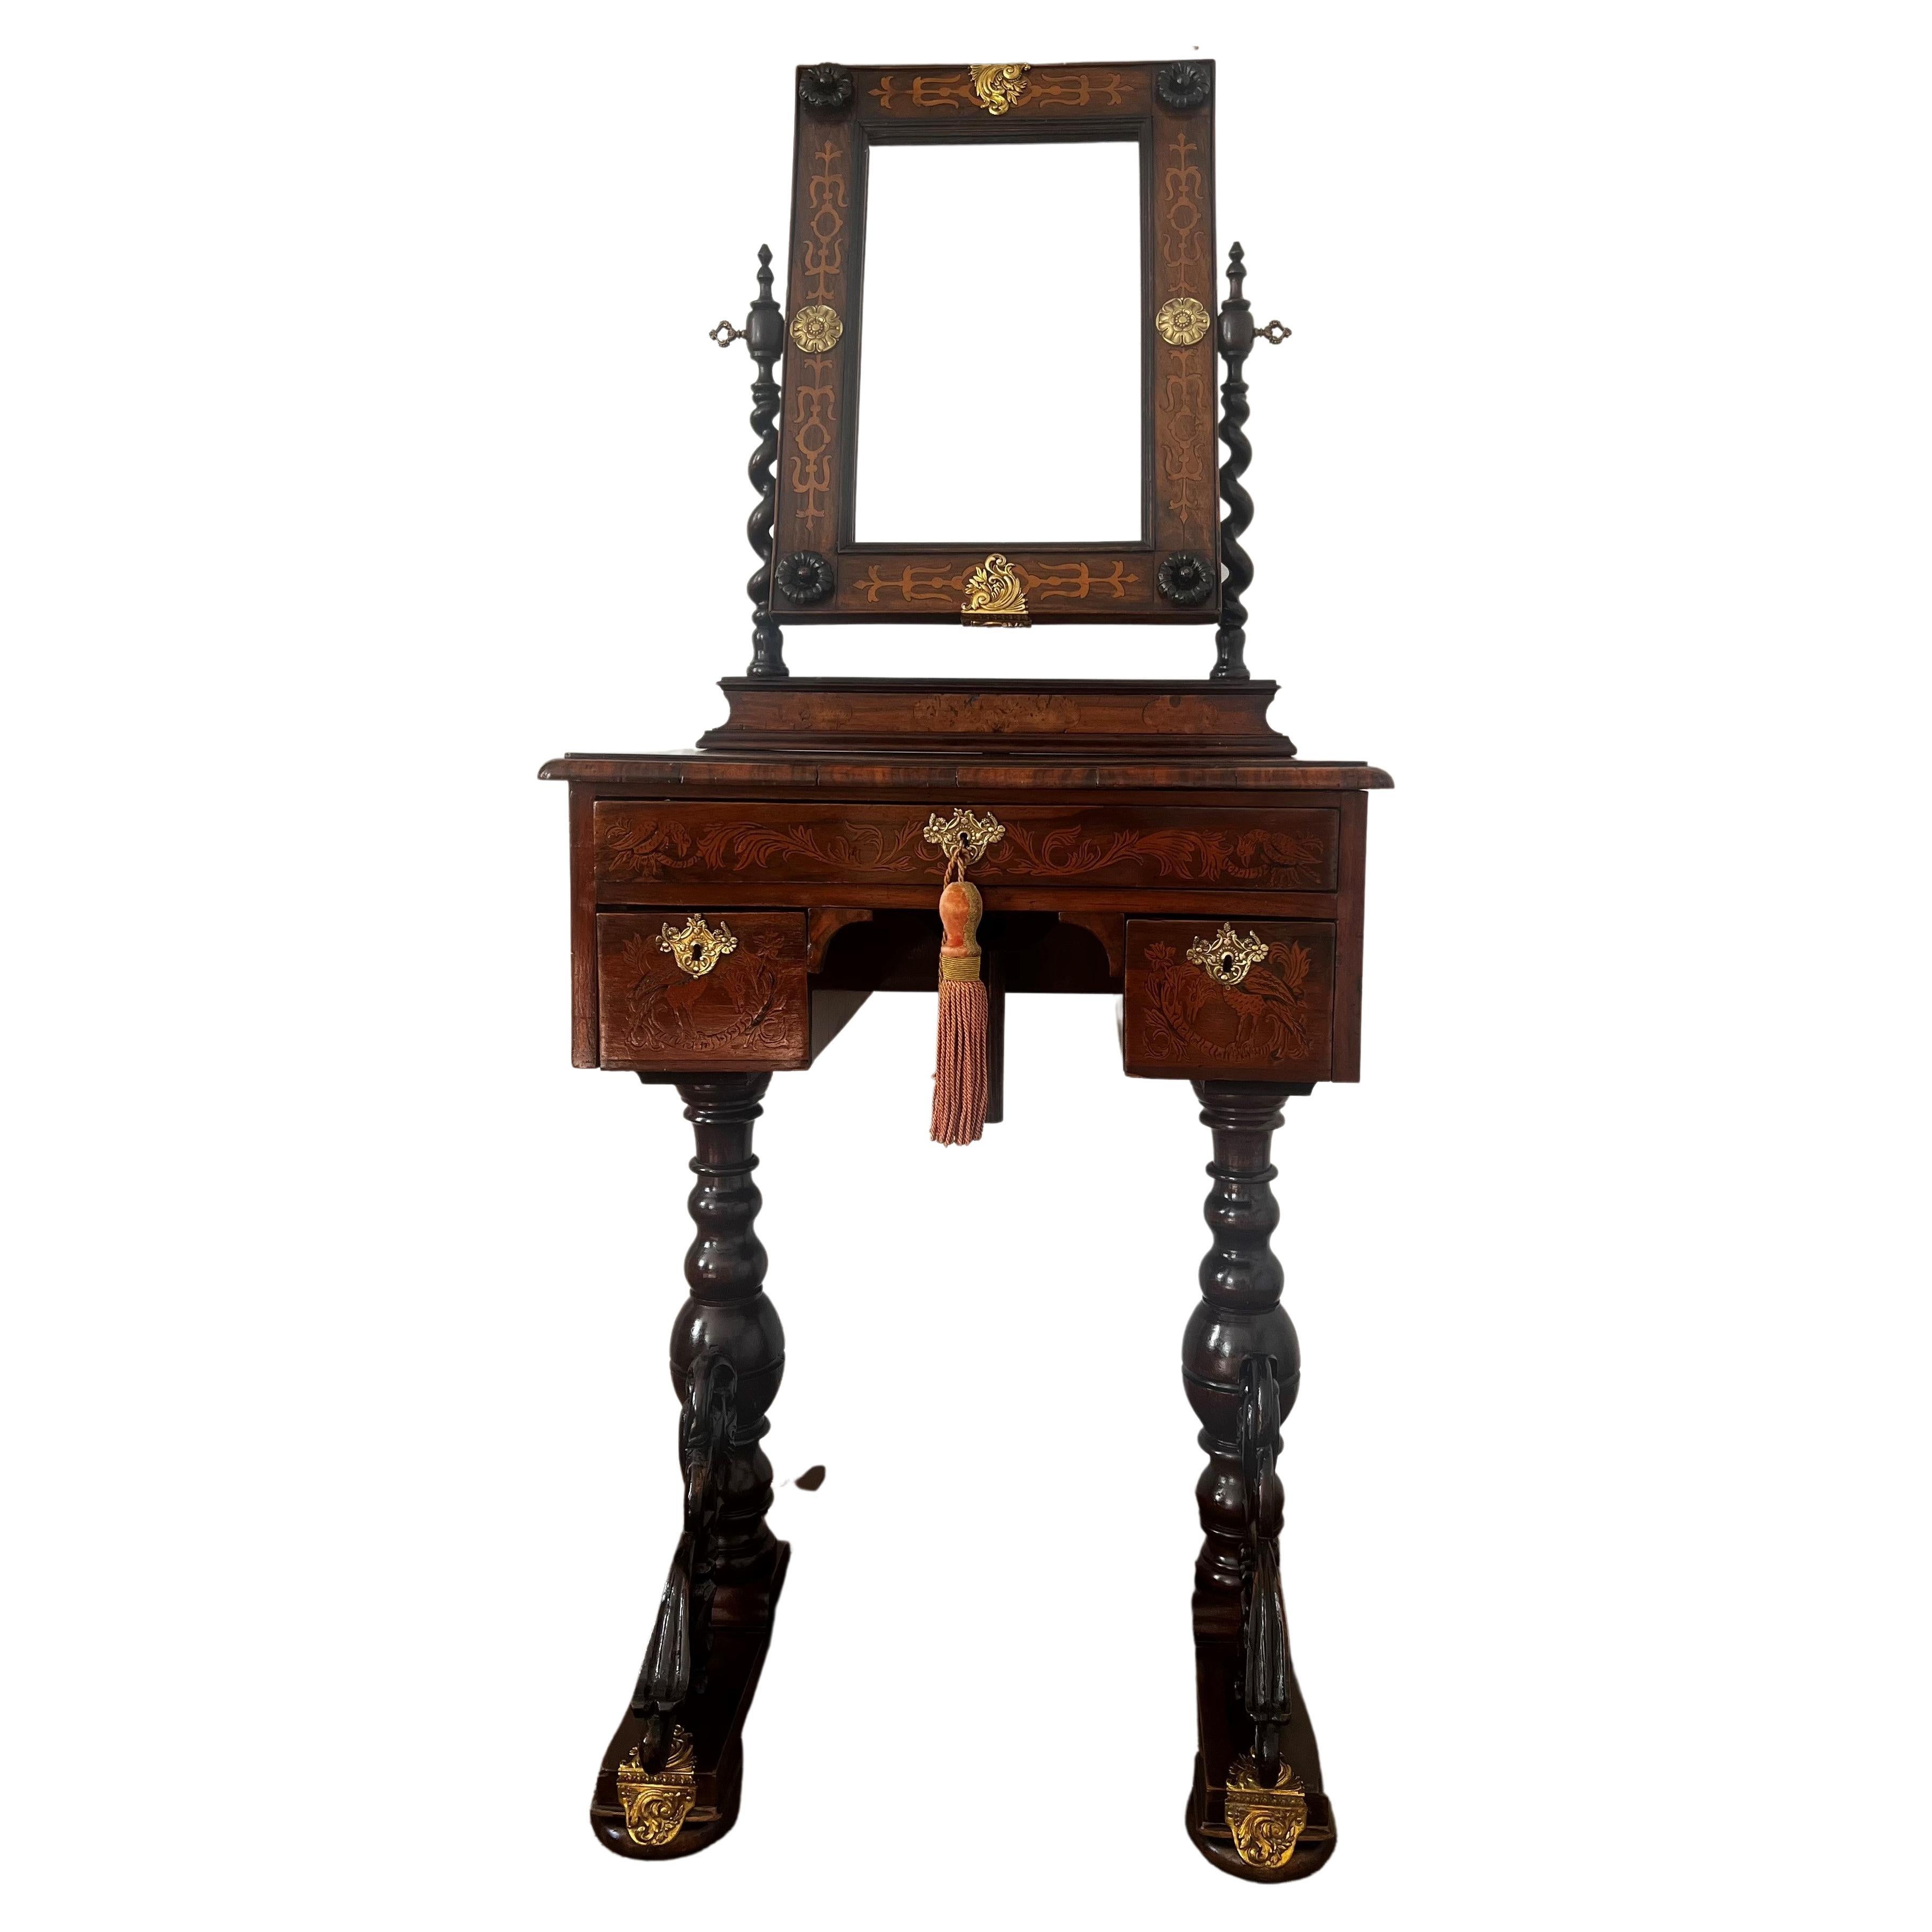 Ancienne table de toilette baroque du XVIIIe siècle avec miroir